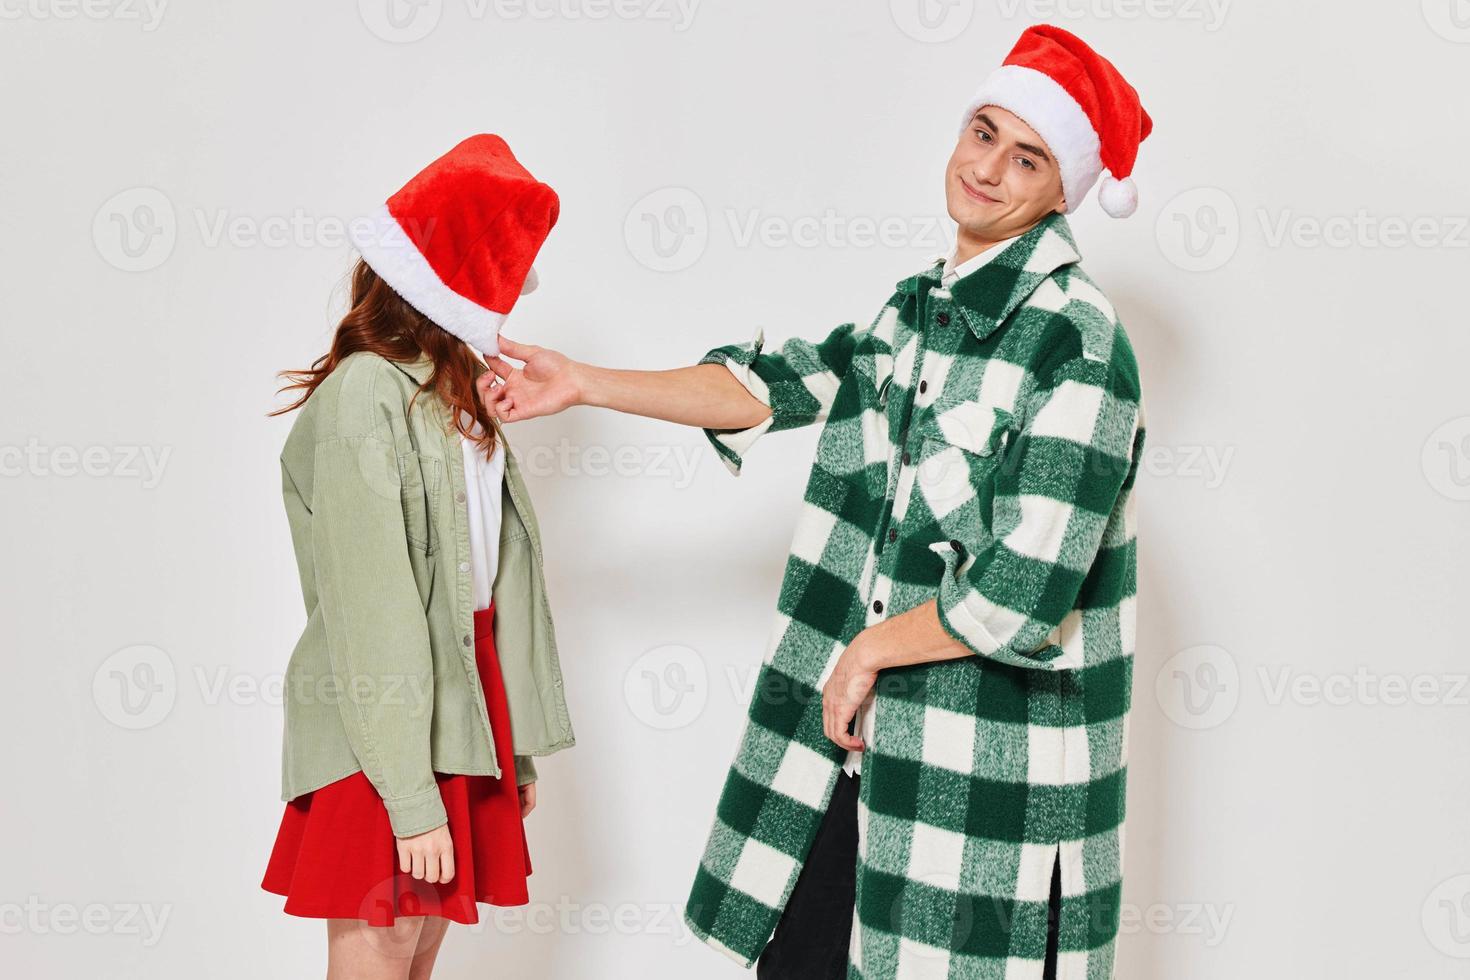 een Mens staat De volgende naar een vrouw Kerstmis hoed emoties vakantie verhouding foto